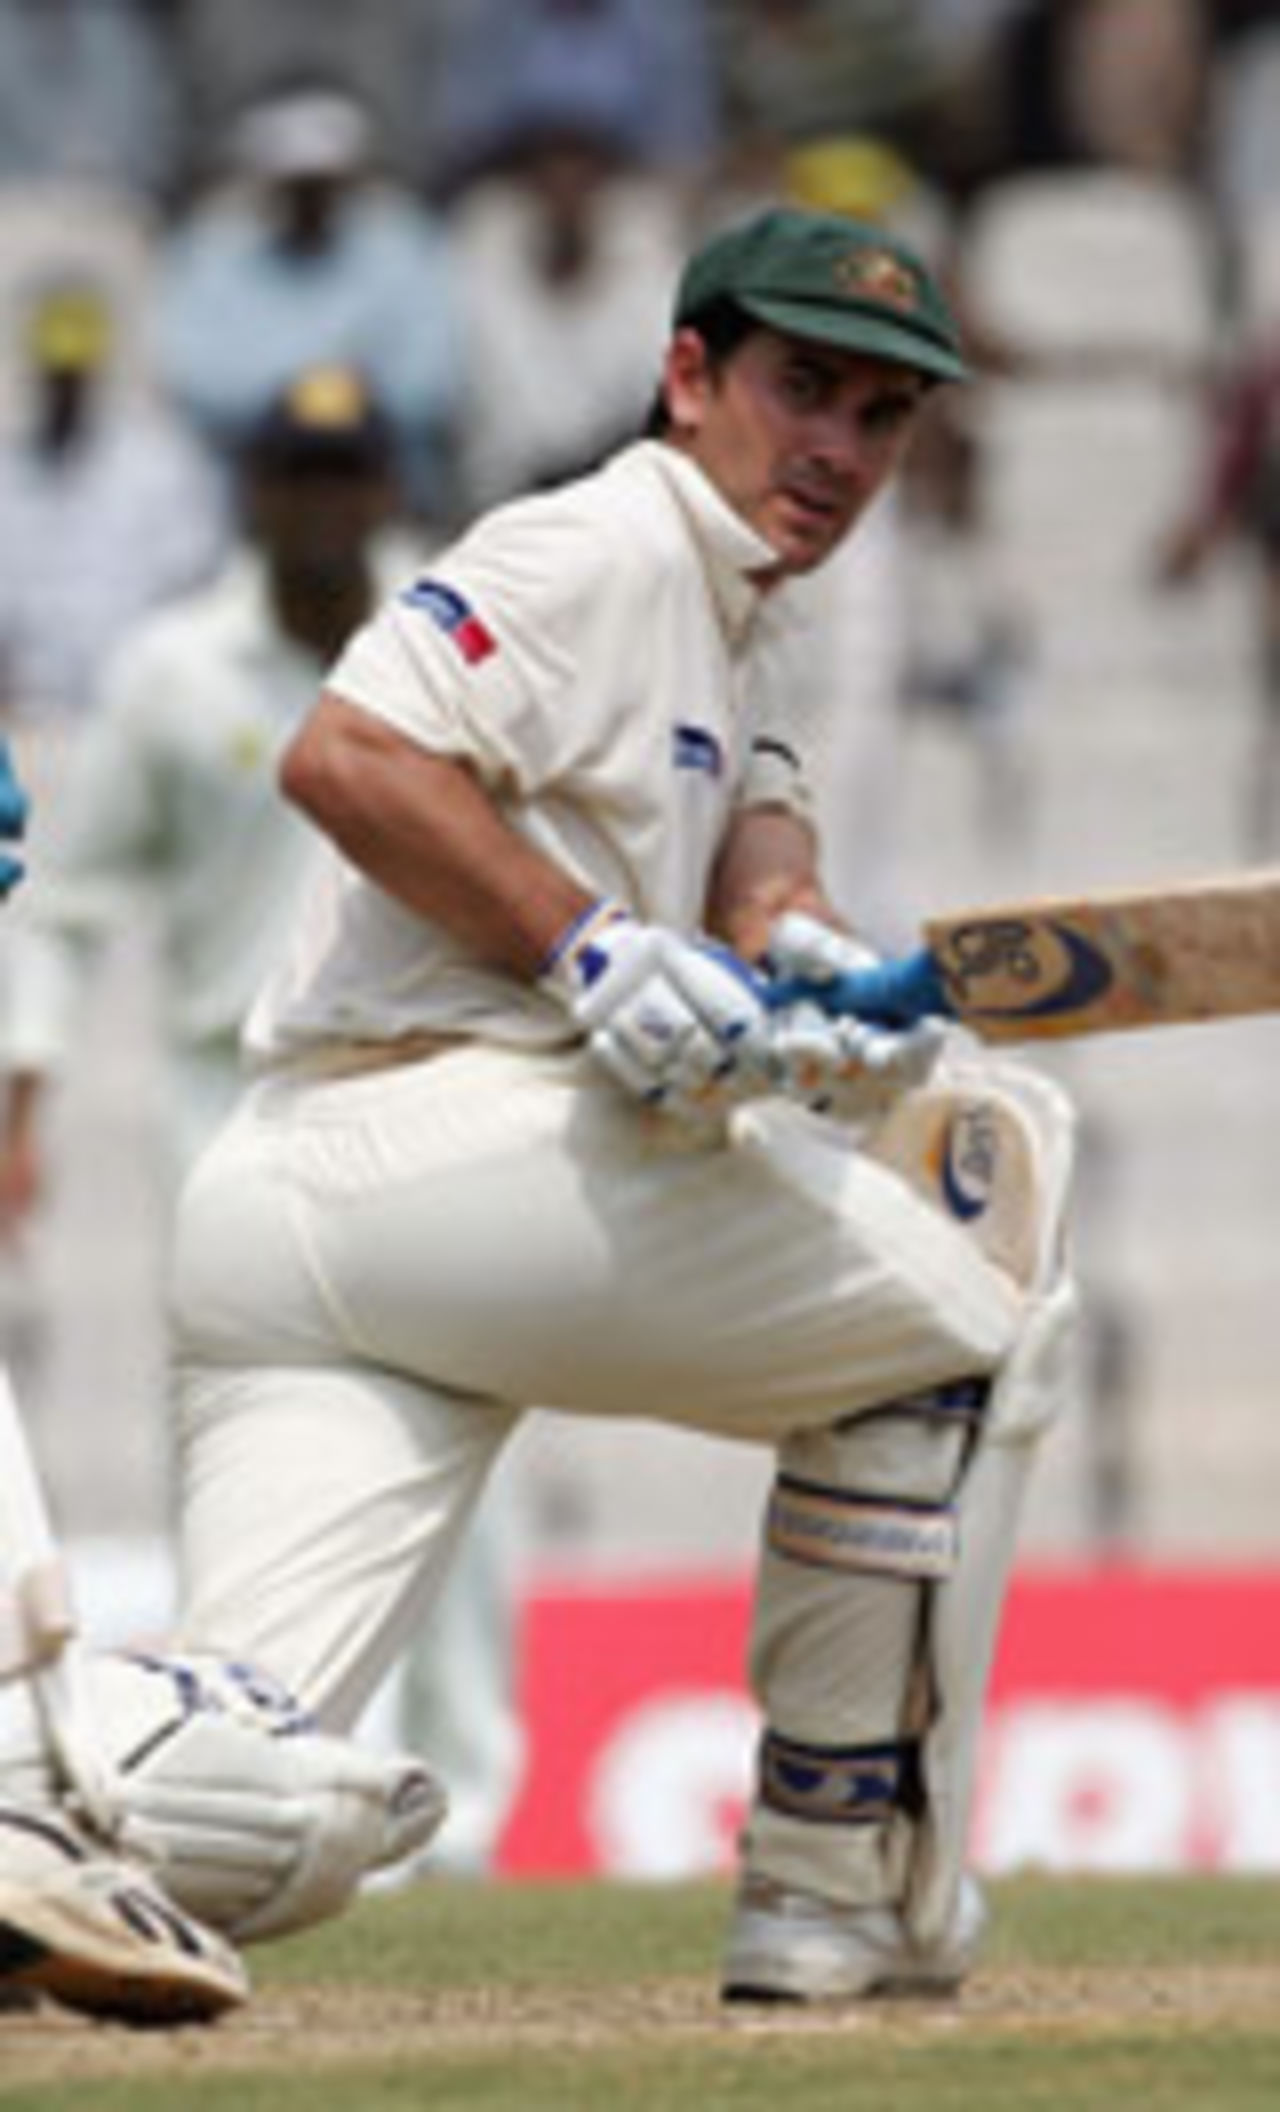 Justin Langer sweeps, India v Australia, 2nd Test, Chennai, 1st day, October 14, 2004